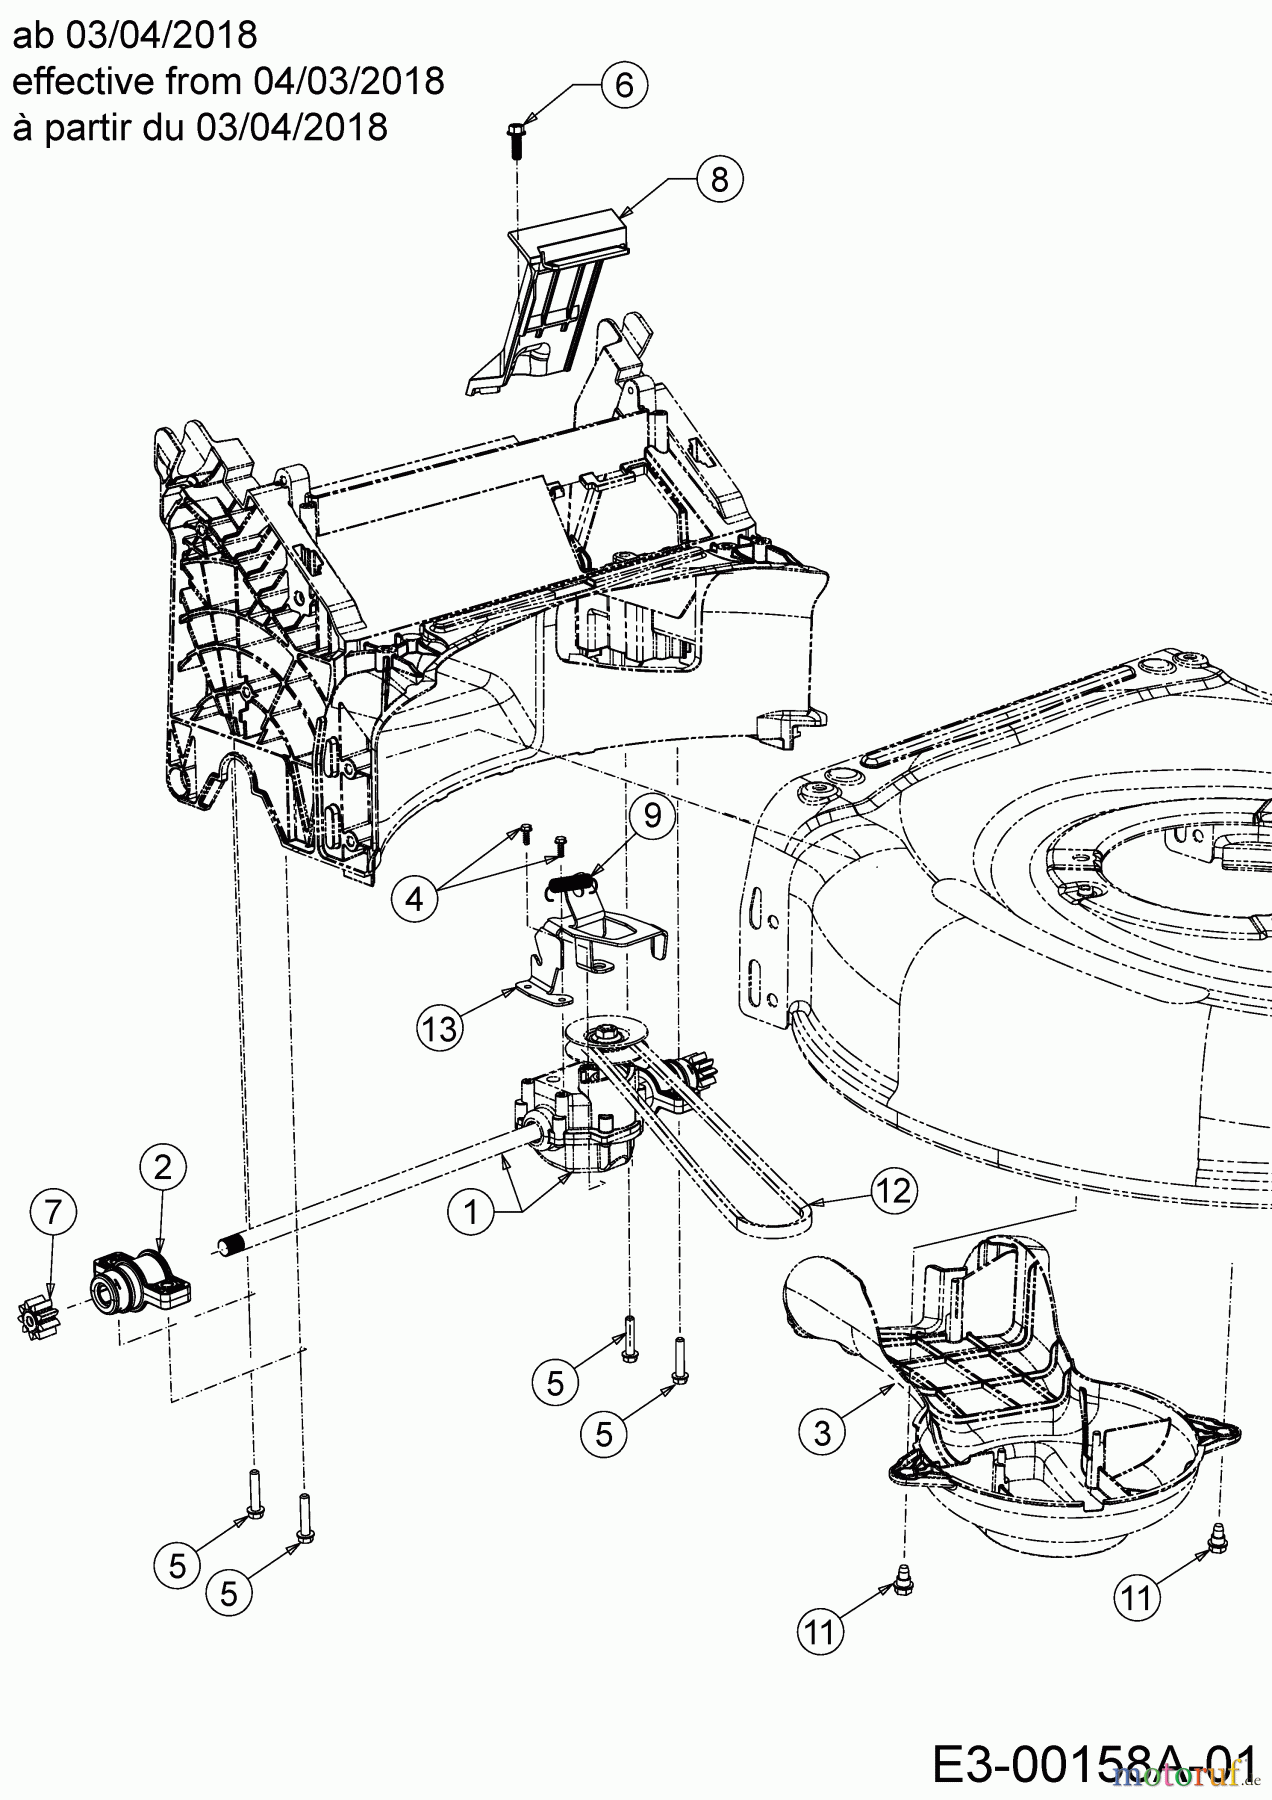  Wolf-Garten Petrol mower self propelled AH 4200 H 12A-LV5B650  (2020) Gearbox, Belt from 04/03/2018